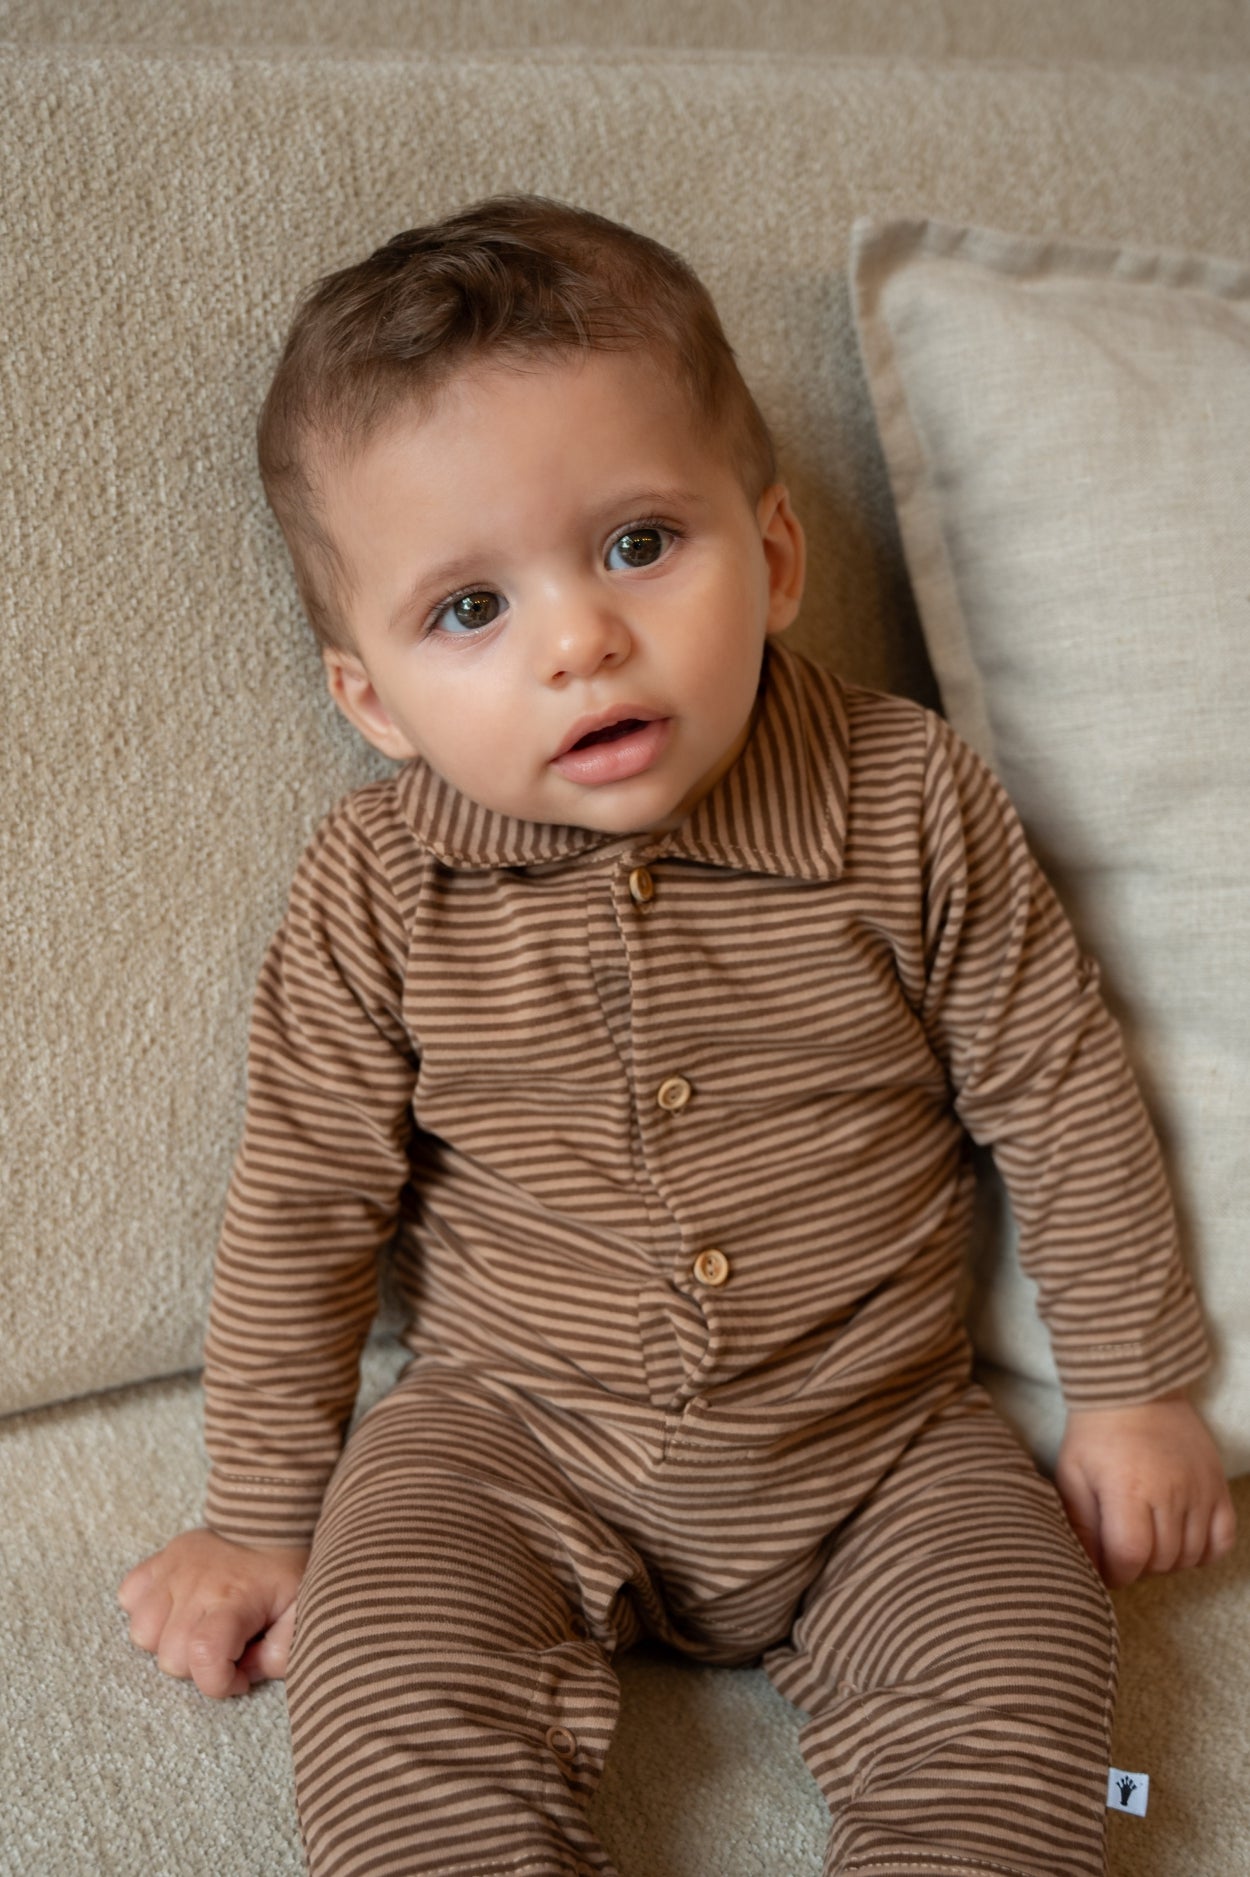 Jongens Jumpsuit Polo van Klein Baby in de kleur Stripe Burro/Rawhide in maat 68.